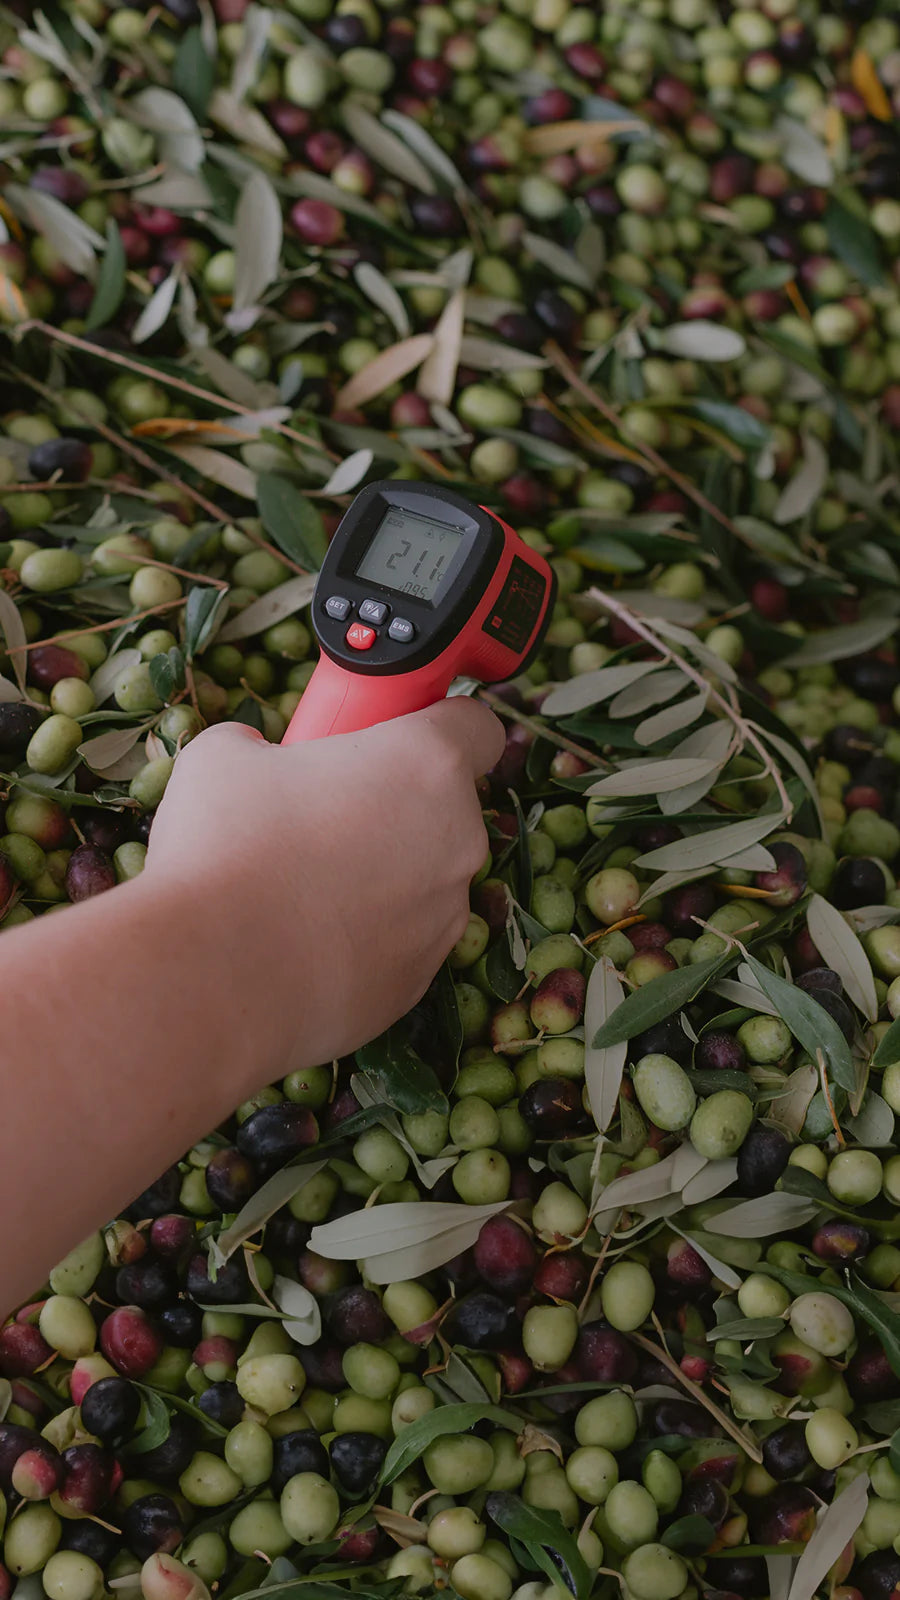 Azeitonas cultivadas no Lagar H: como acontece a influência nos azeites de oliva extravirgem?